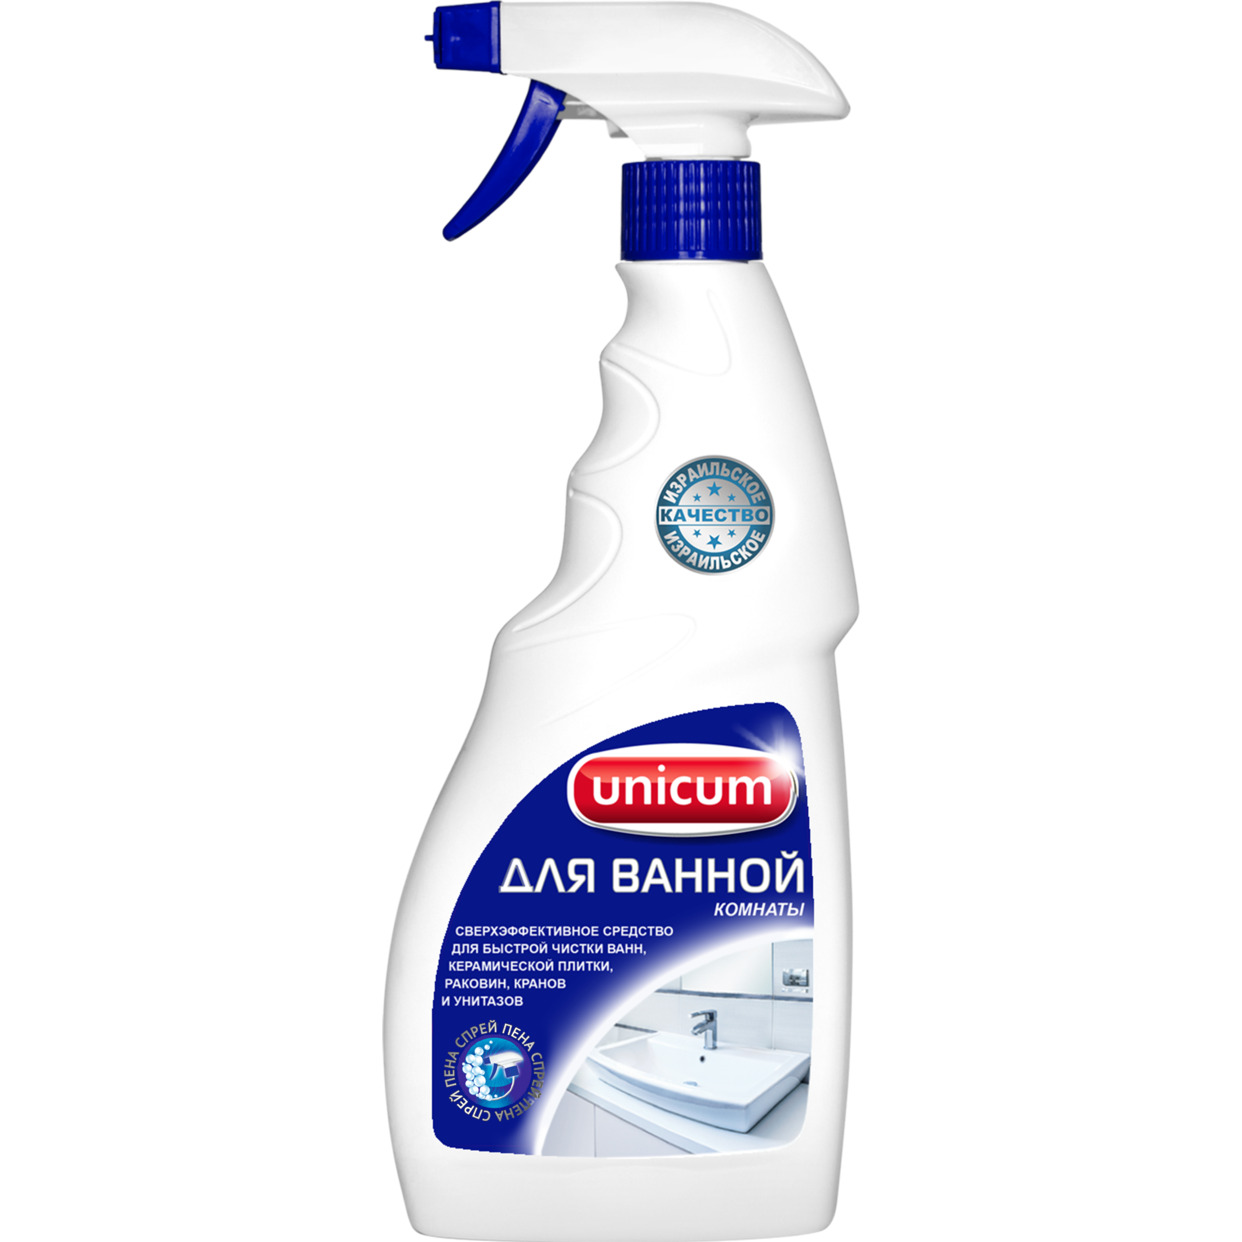 Средство для чистки ванной комнаты Unicum 500 мл по акции в Пятерочке